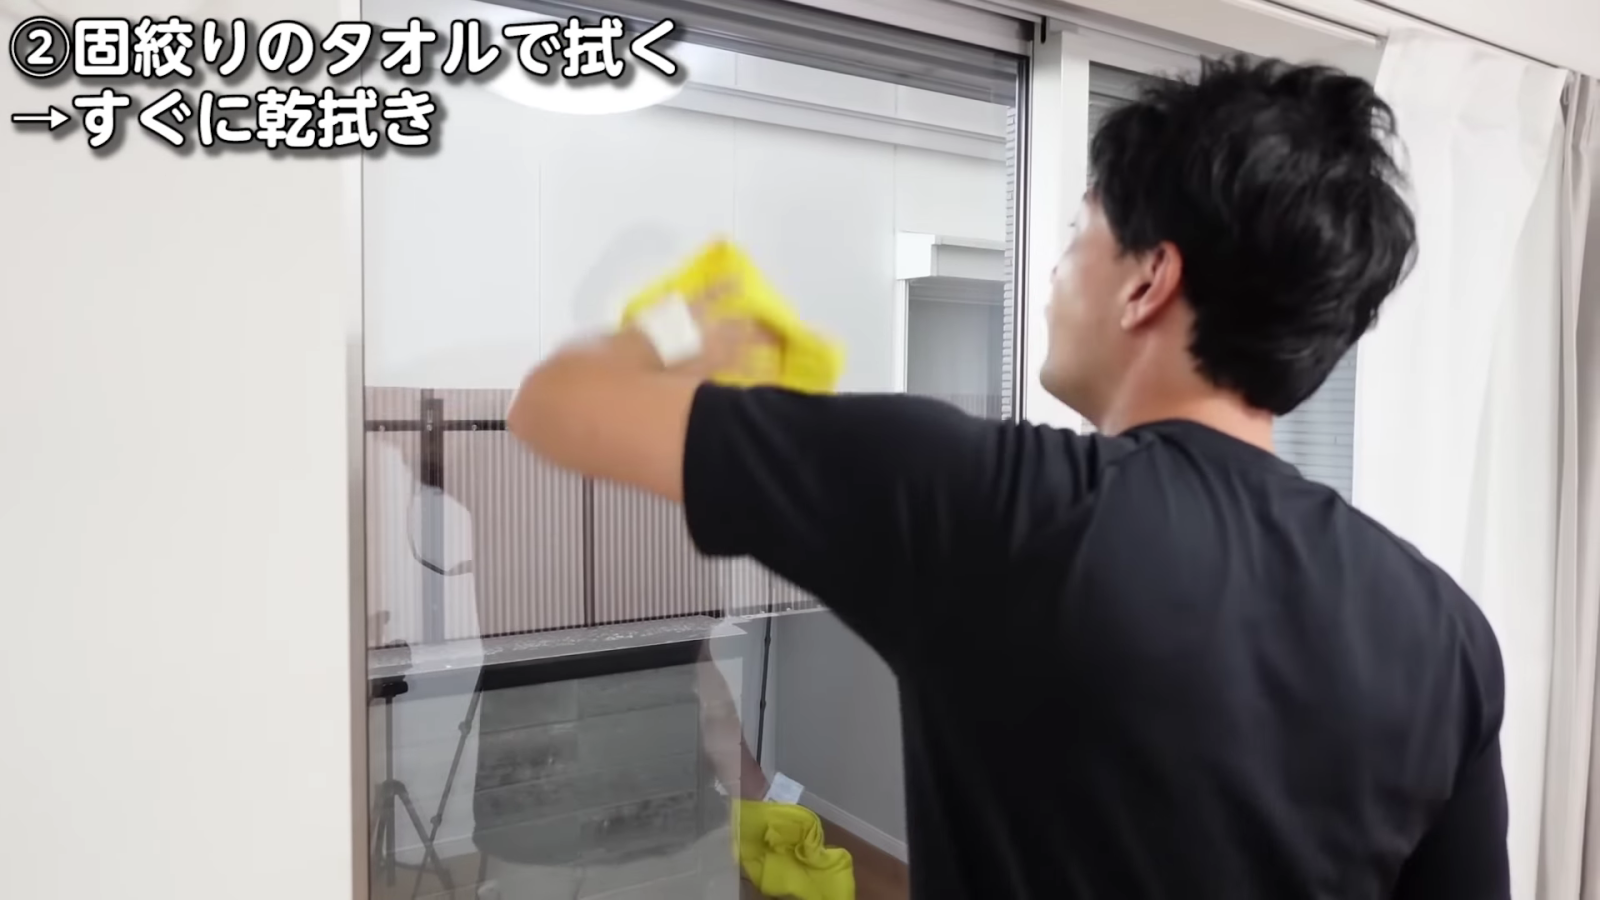 窓掃除をする男性